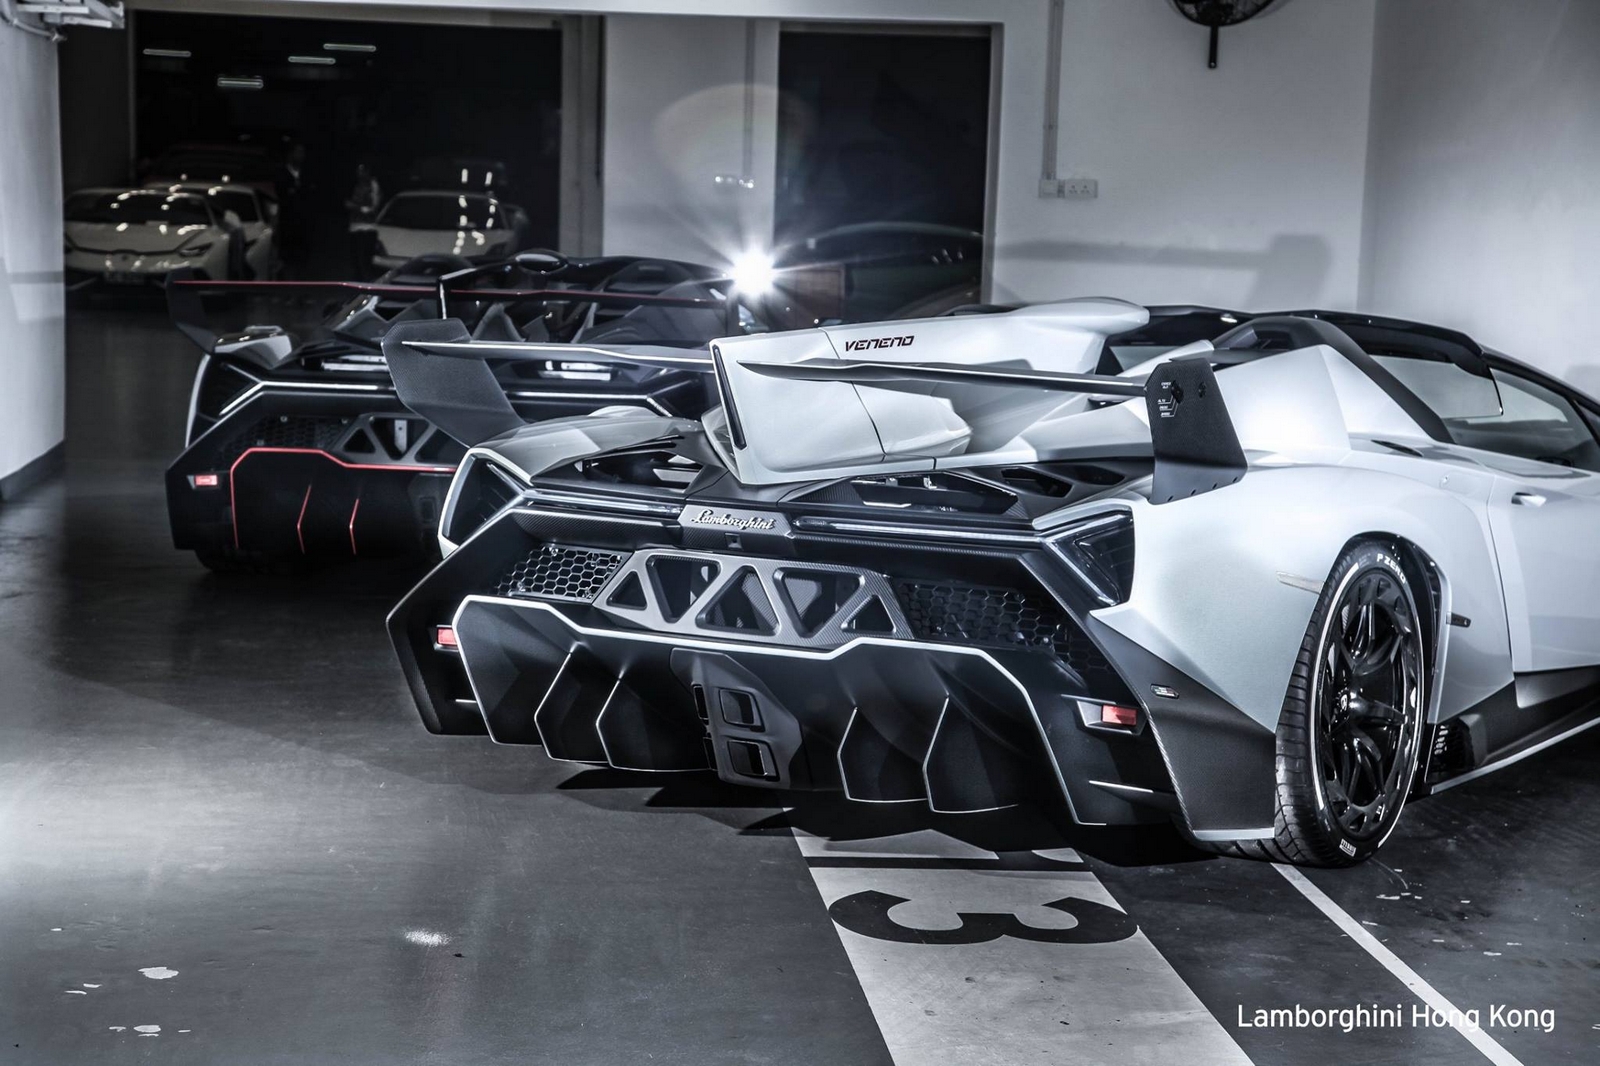 Lamborghini i rrallë del në shitje me një çmim marramendës që arrin në pesë milionë euro foto 4